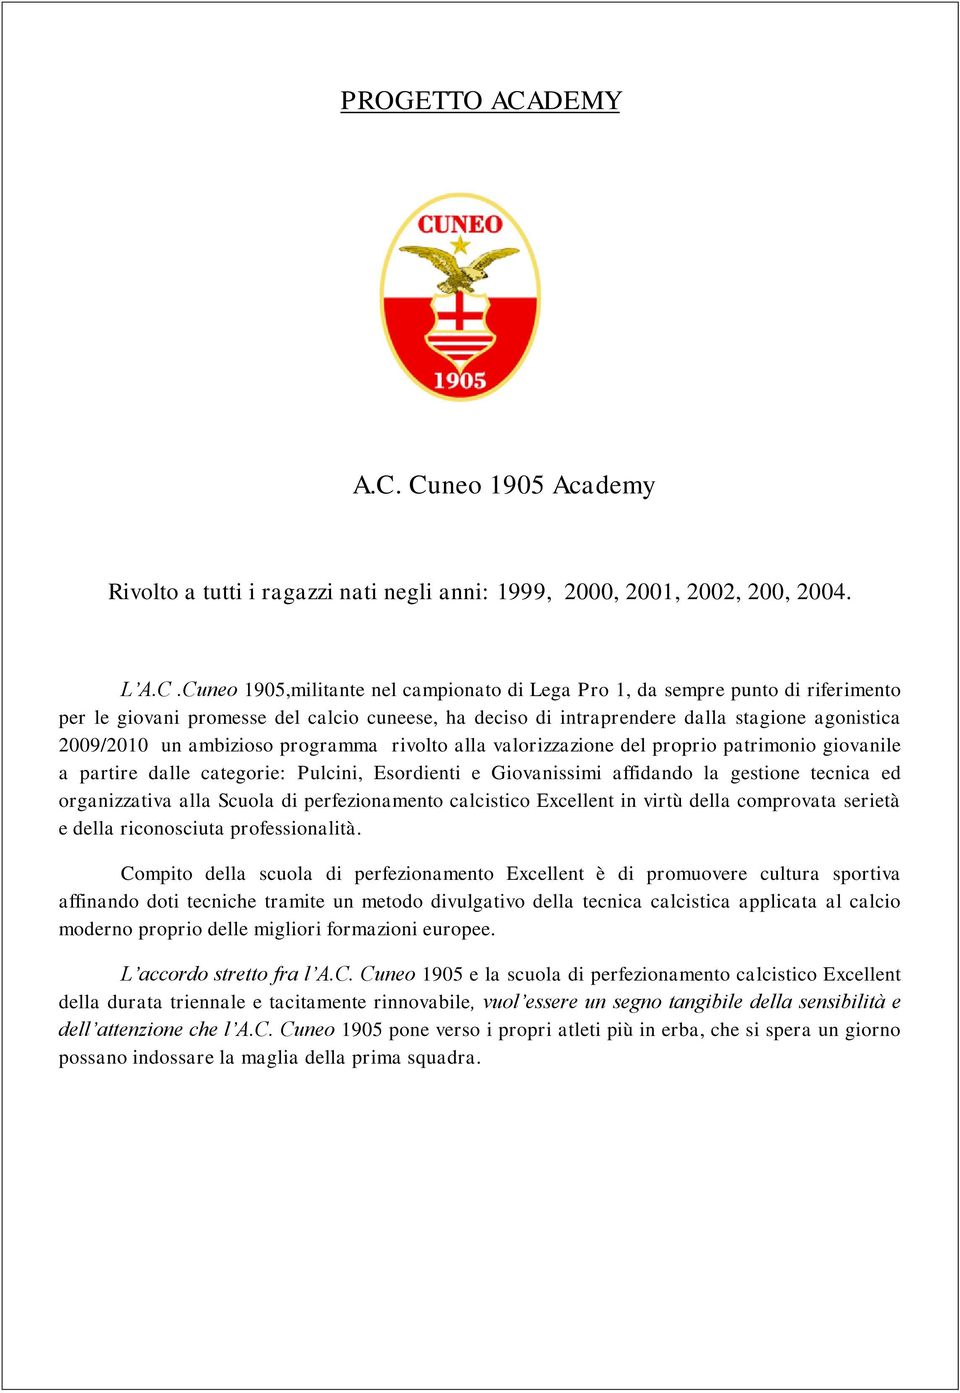 Cuneo 1905 Academy Rivolto a tutti i ragazzi nati negli anni: 1999, 2000, 2001, 2002, 200, 2004. L A.C.Cuneo 1905,militante nel campionato di Lega Pro 1, da sempre punto di riferimento per le giovani